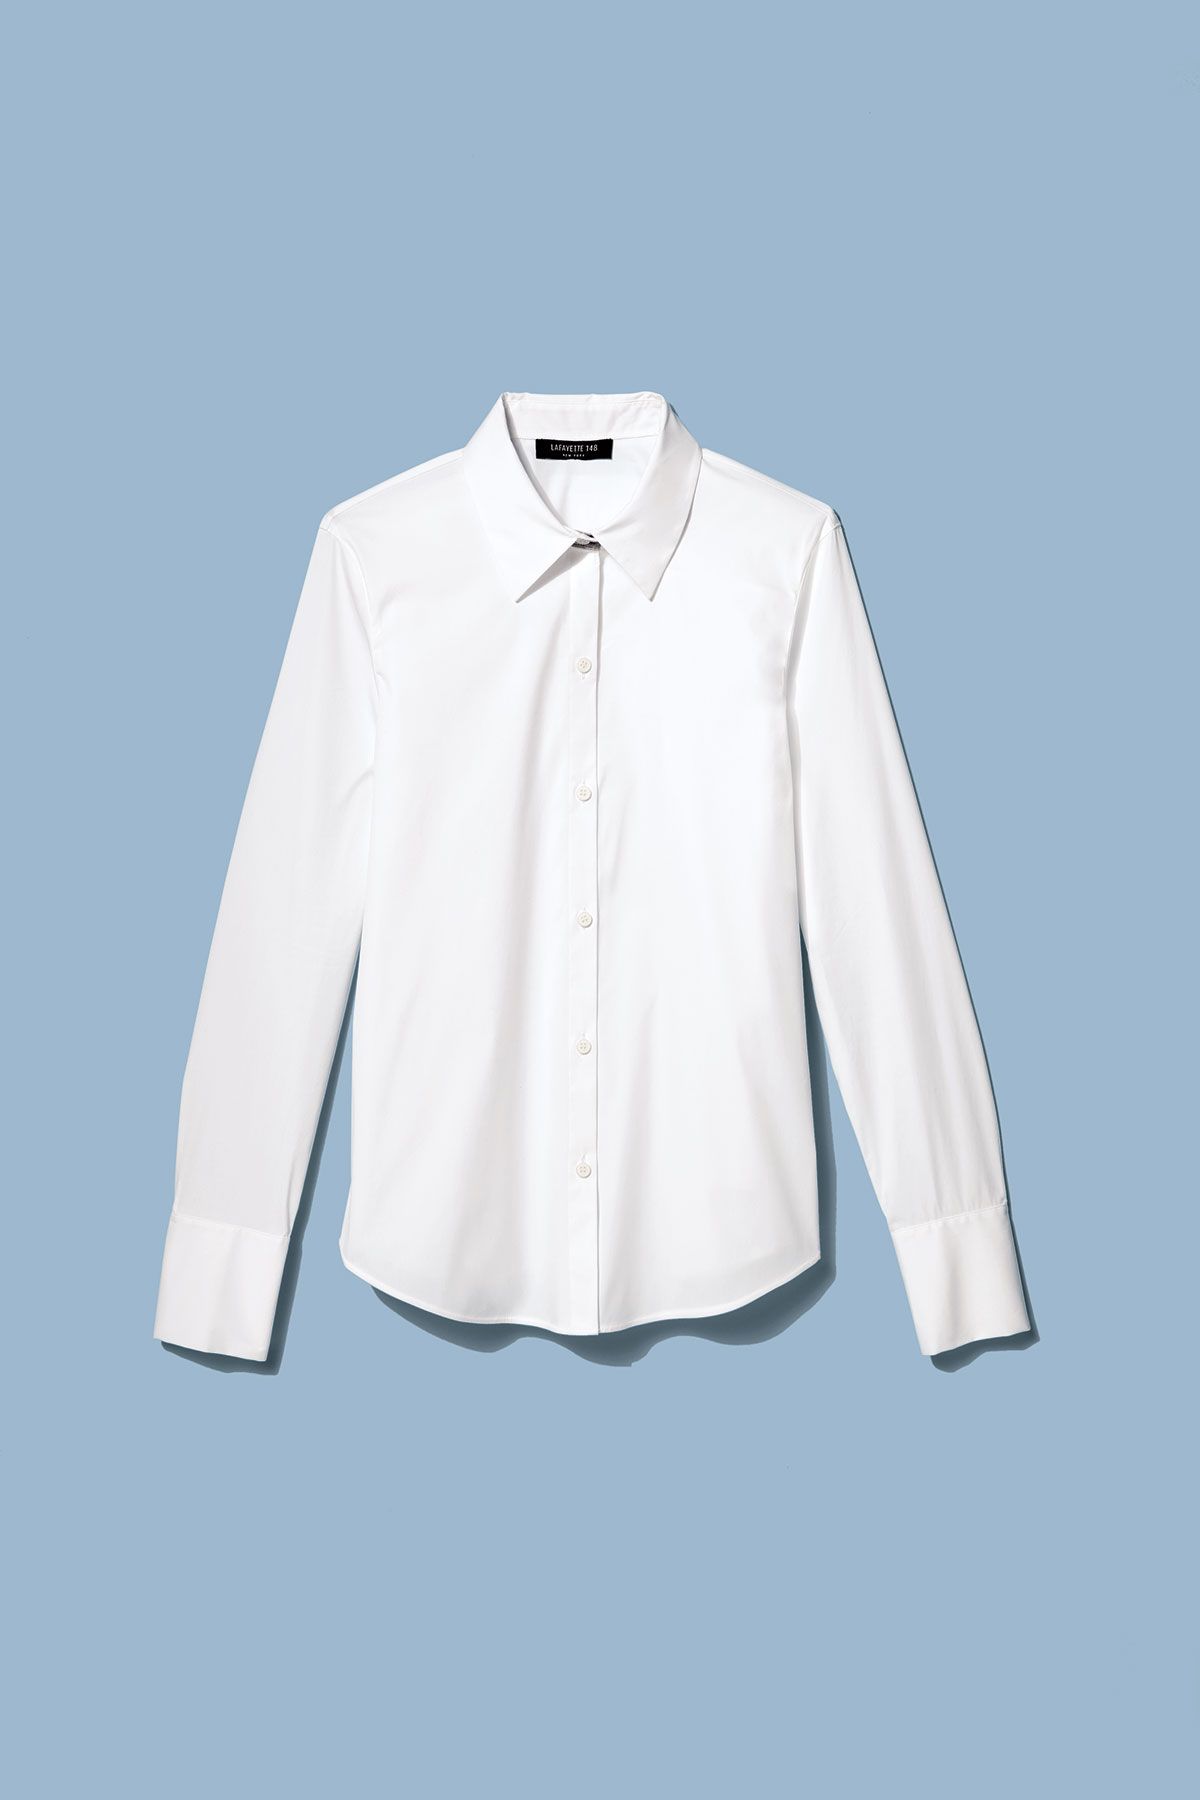 Las 10 mejores camisas blancas que hemos usado